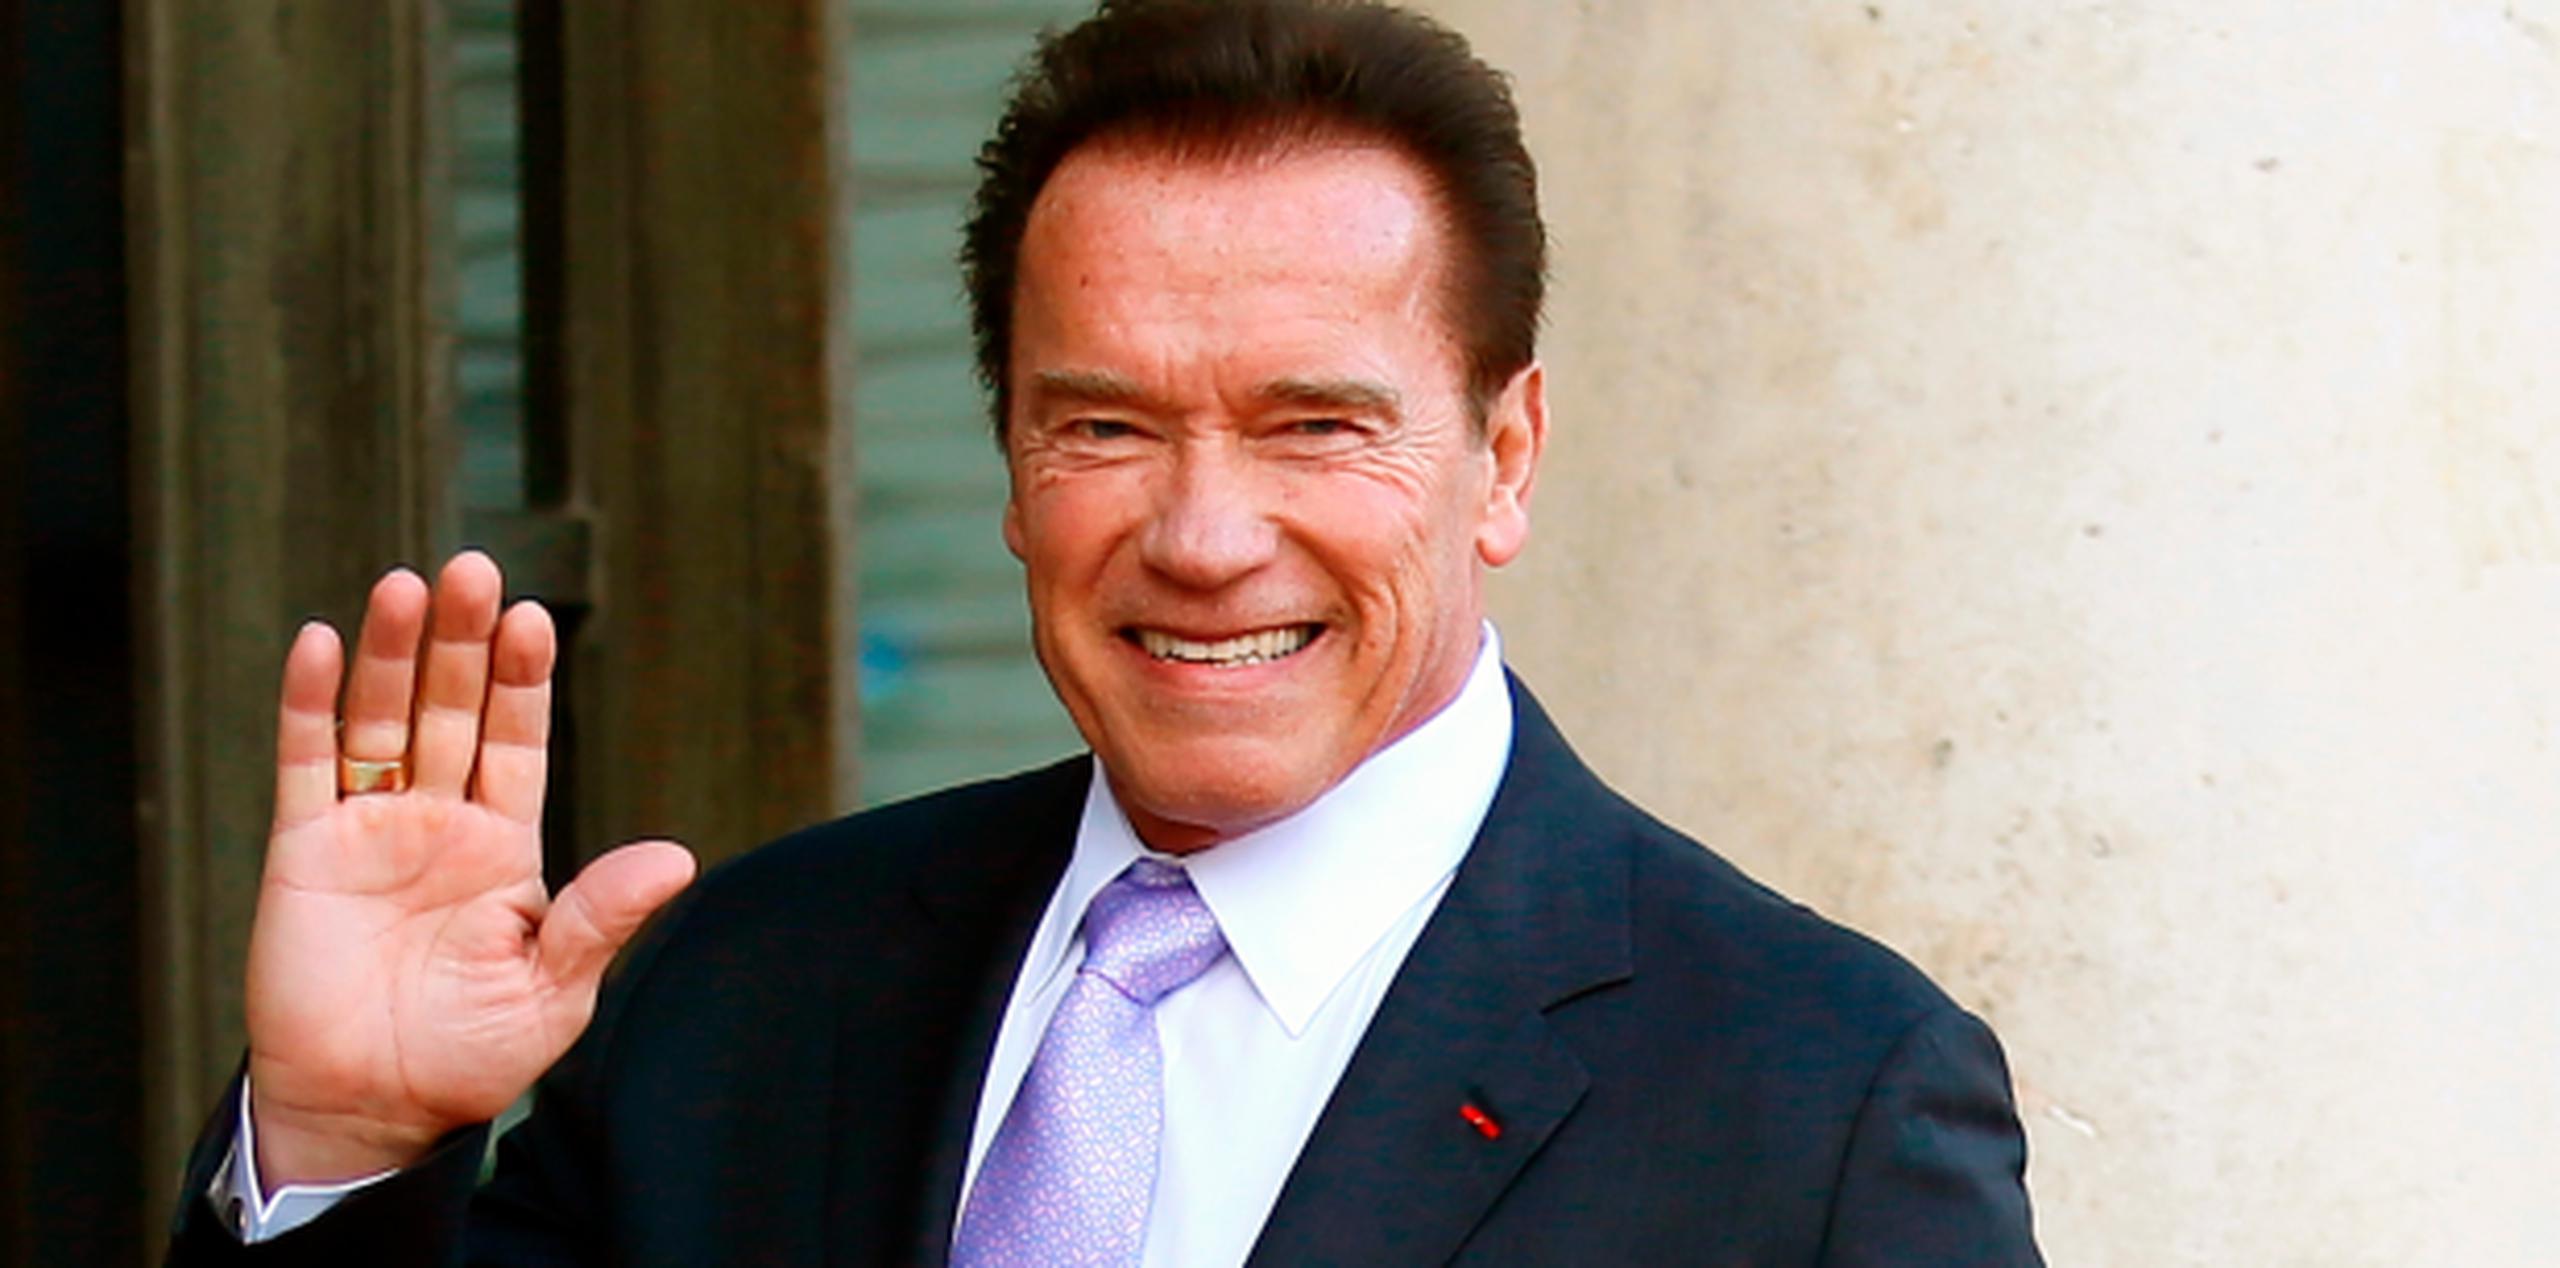 La operación era necesaria para reemplazar una válvula que a Schwarzenegger le habían colocado en 1997 por un defecto cardiaco congénito. (Archivo)